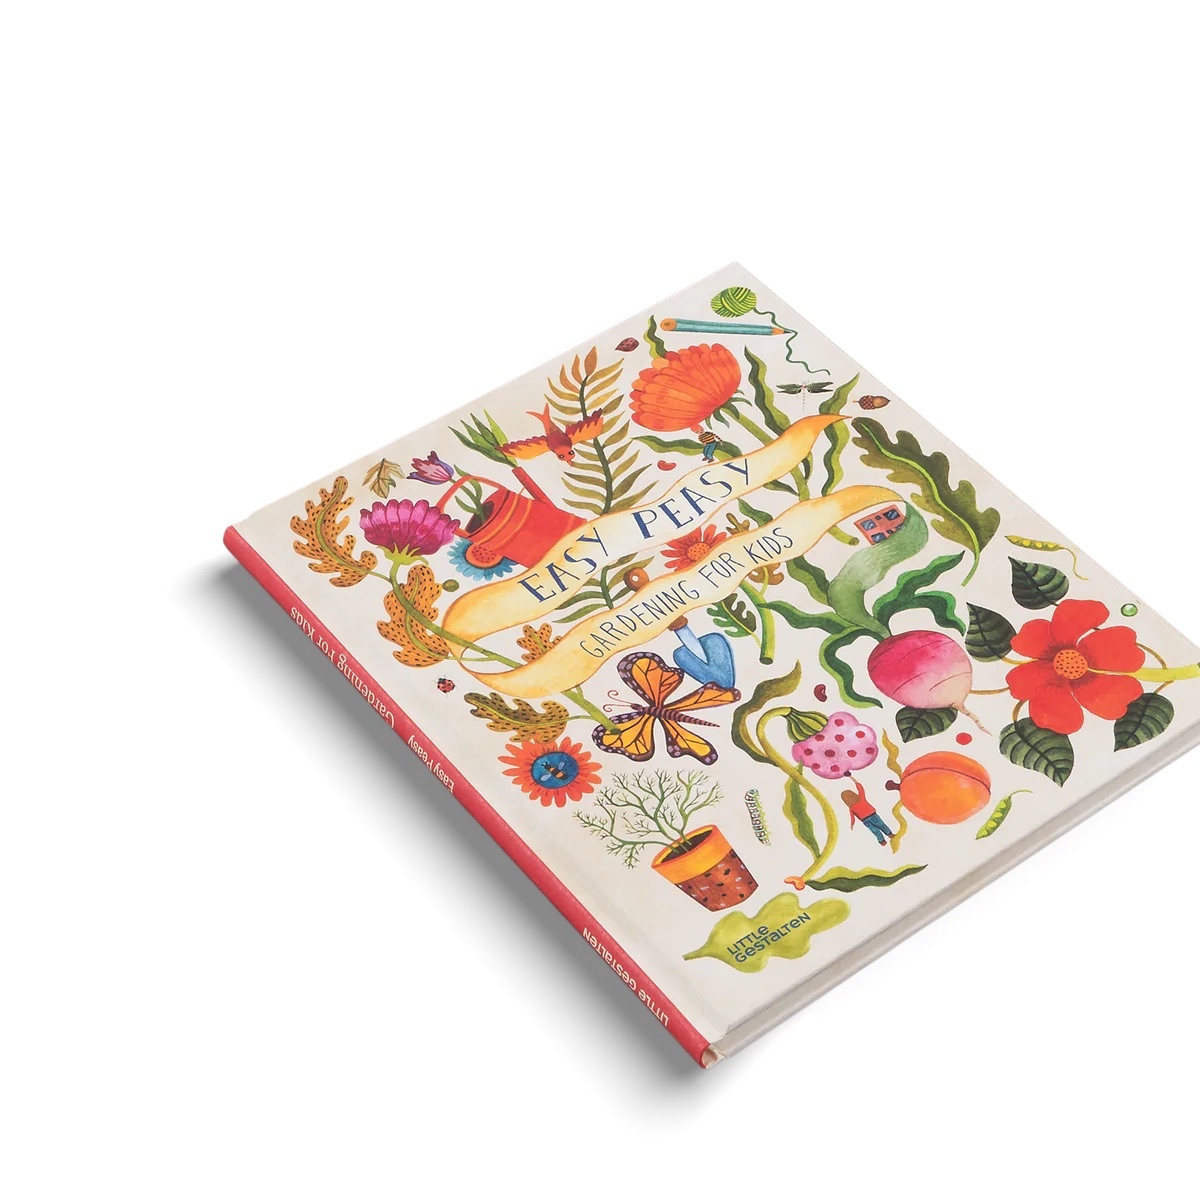 Ingram - ING Easy Peasy Gardening for Kids Book